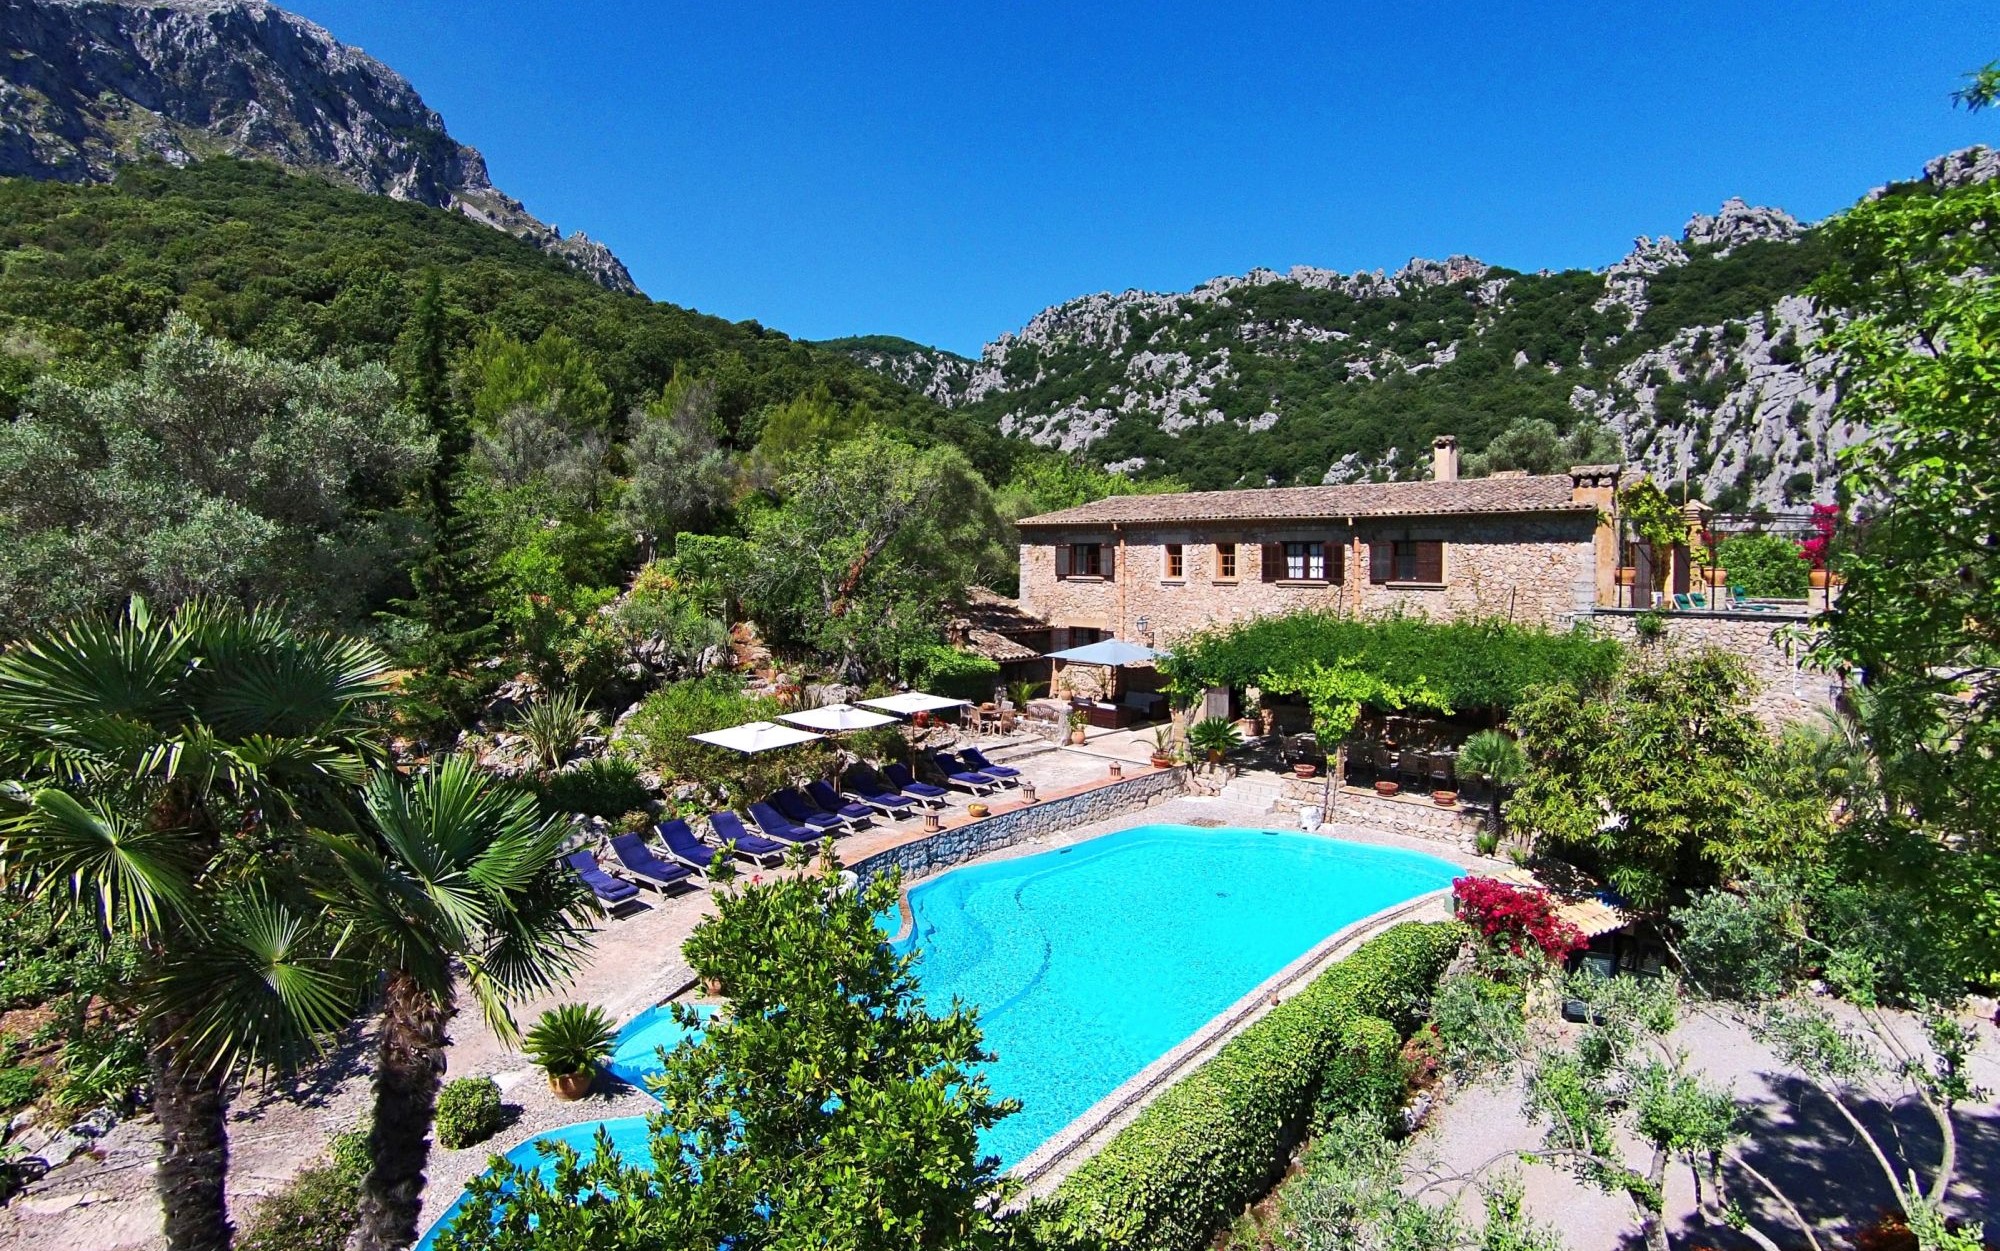 Swimming pool of Villa Poligono, Mallorca